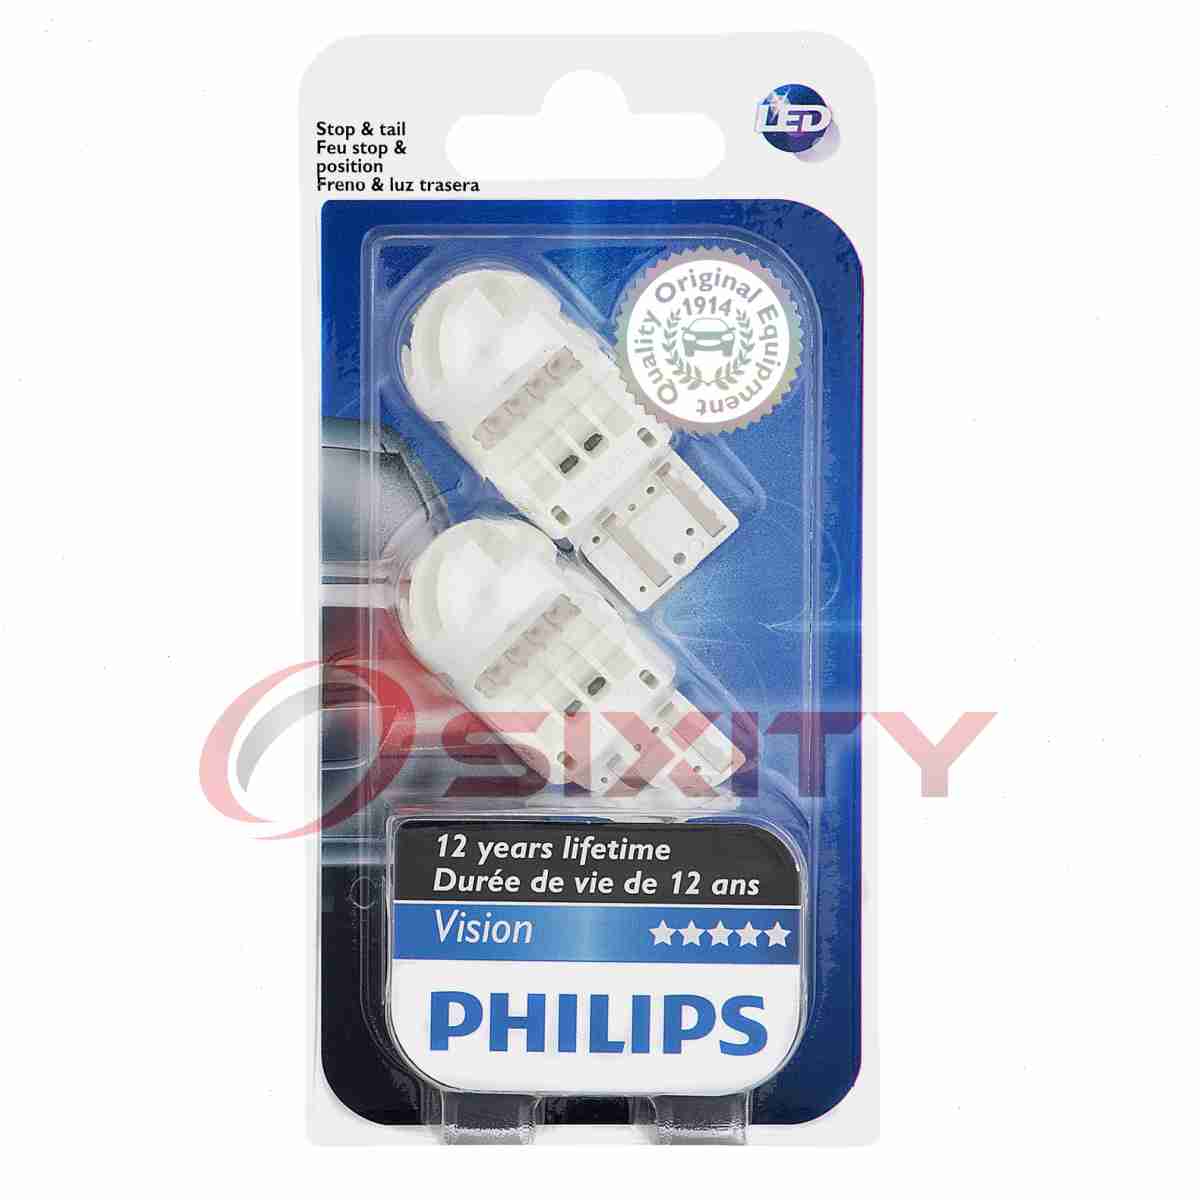 Филипс диодные. Philips w21/5w led. Лампы Philips w21w. W21/5 лампа диодная Филипс. Лампа p21w светодиодная Филипс.